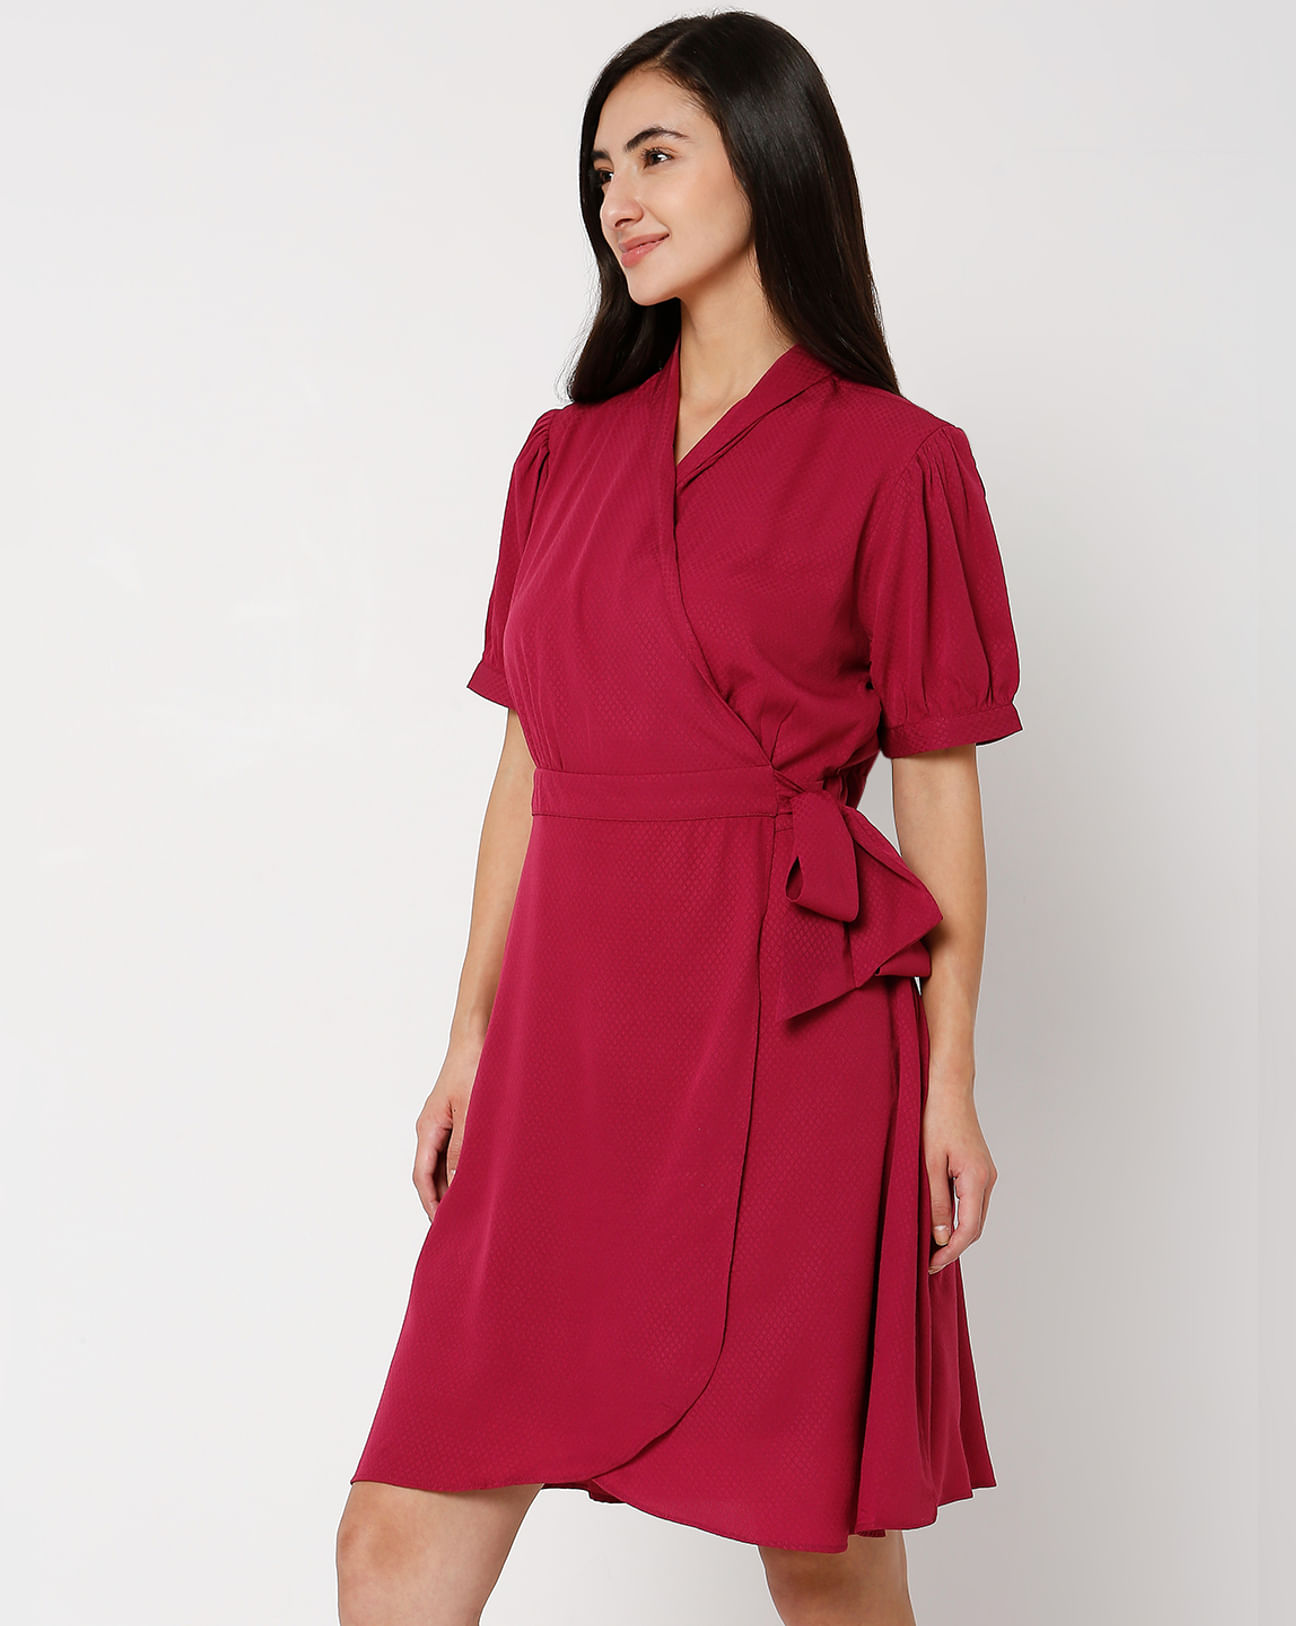 Buy Dark V-Neck Wrap Dress For Women Online India |